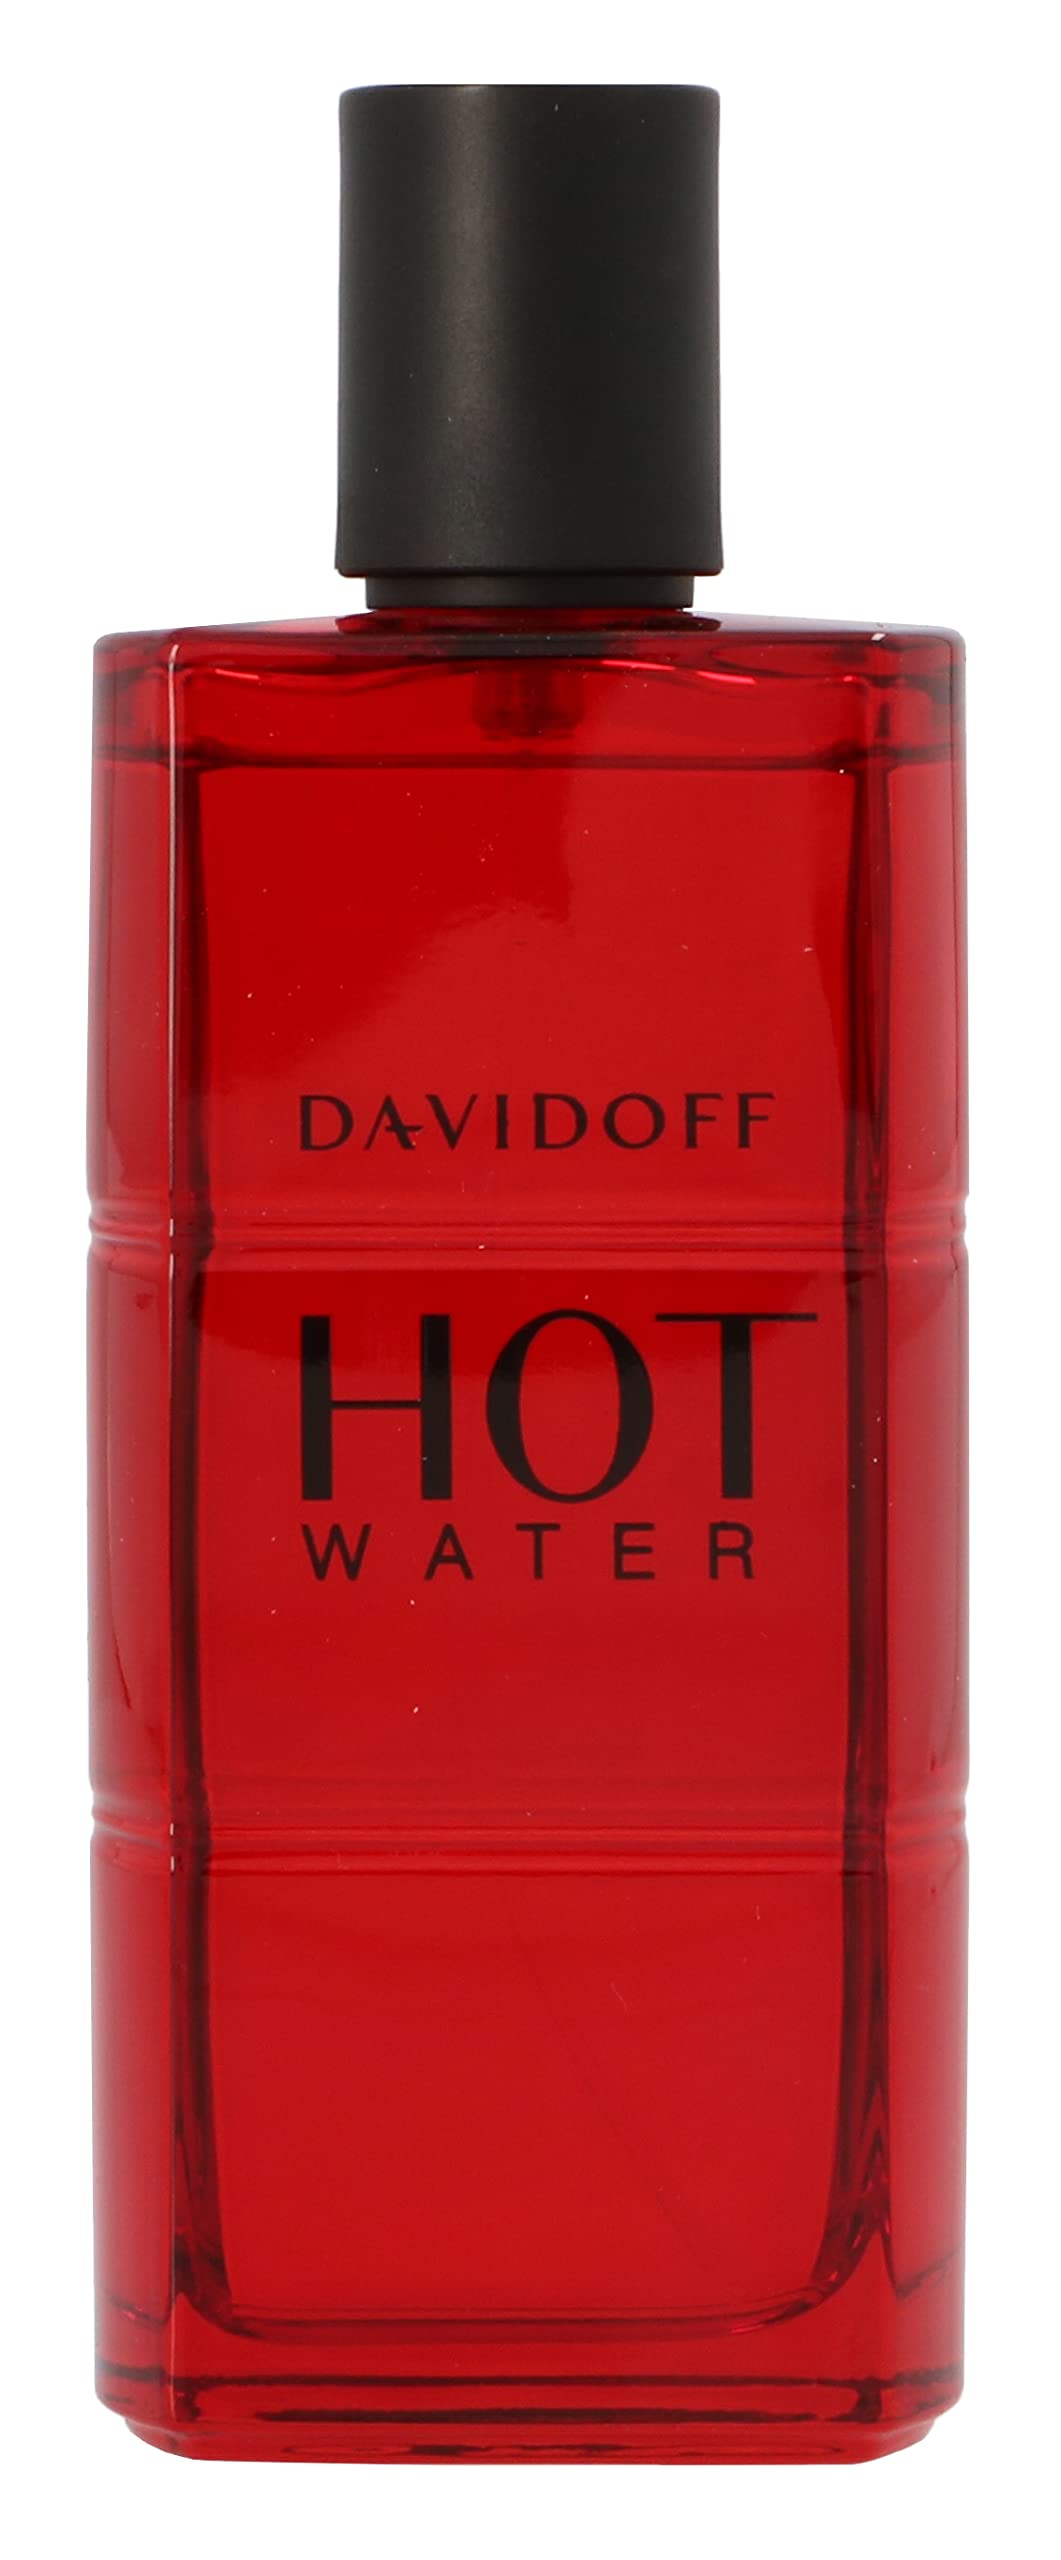 Zino Davidoff Hot Water By Zino Davidoff For Men Eau De Toilette Spray, 3.7-Ounce / 110 Ml